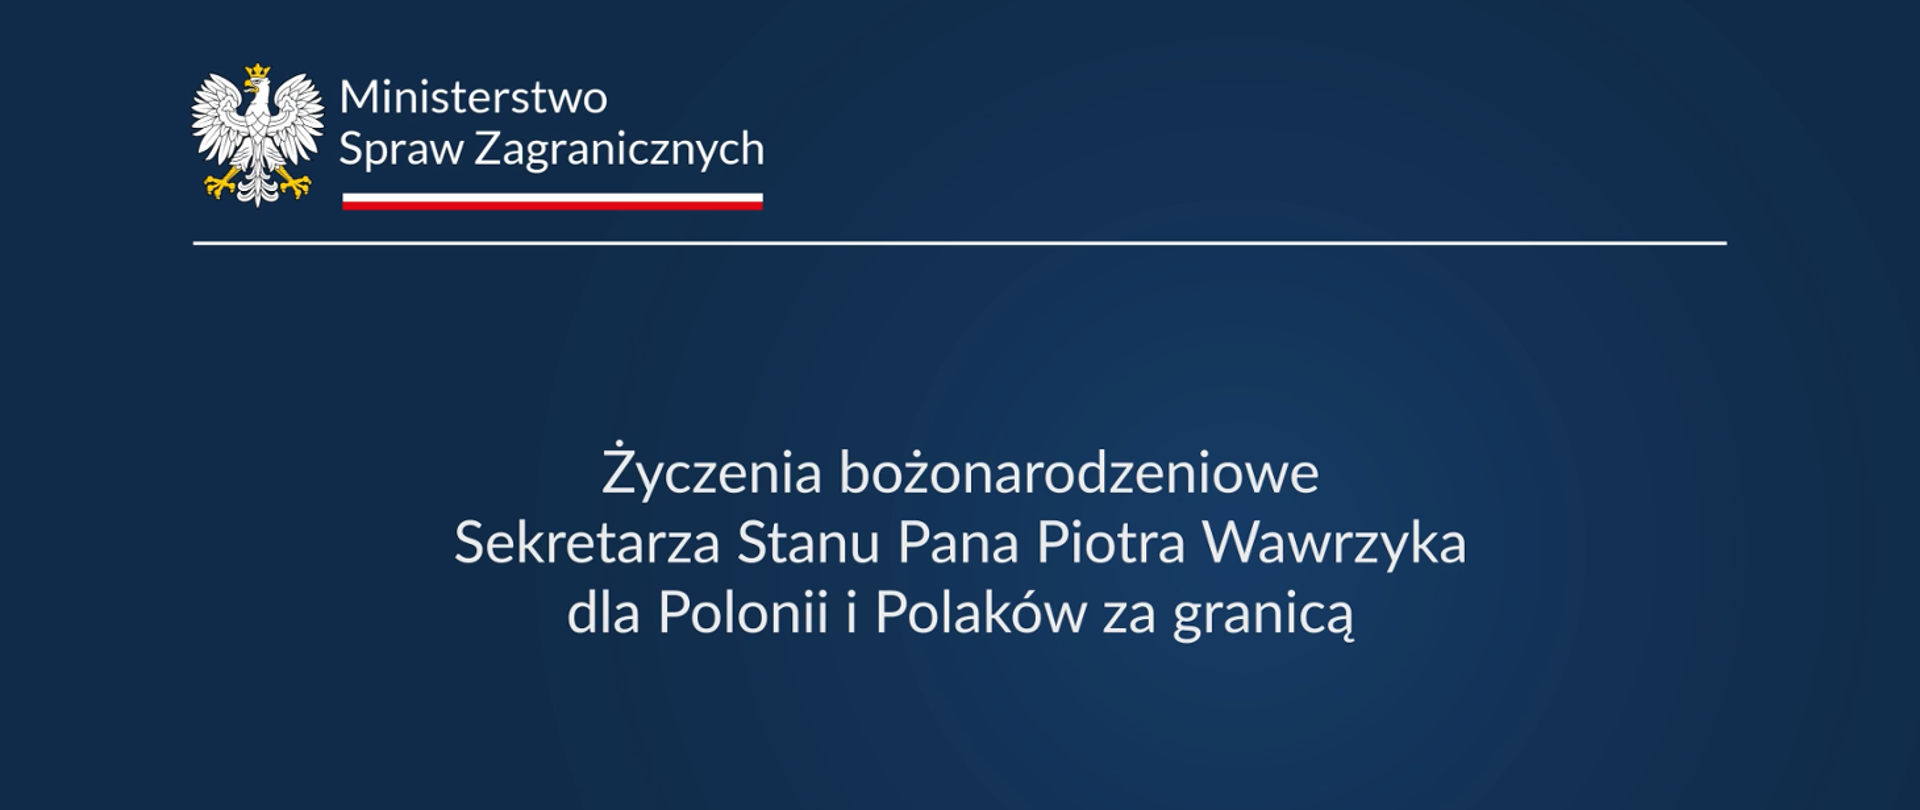 Życzenia bożonarodzeniowe Sekretarza Stanu P. Wawrzyka dla Polonii i Polaków za granicą